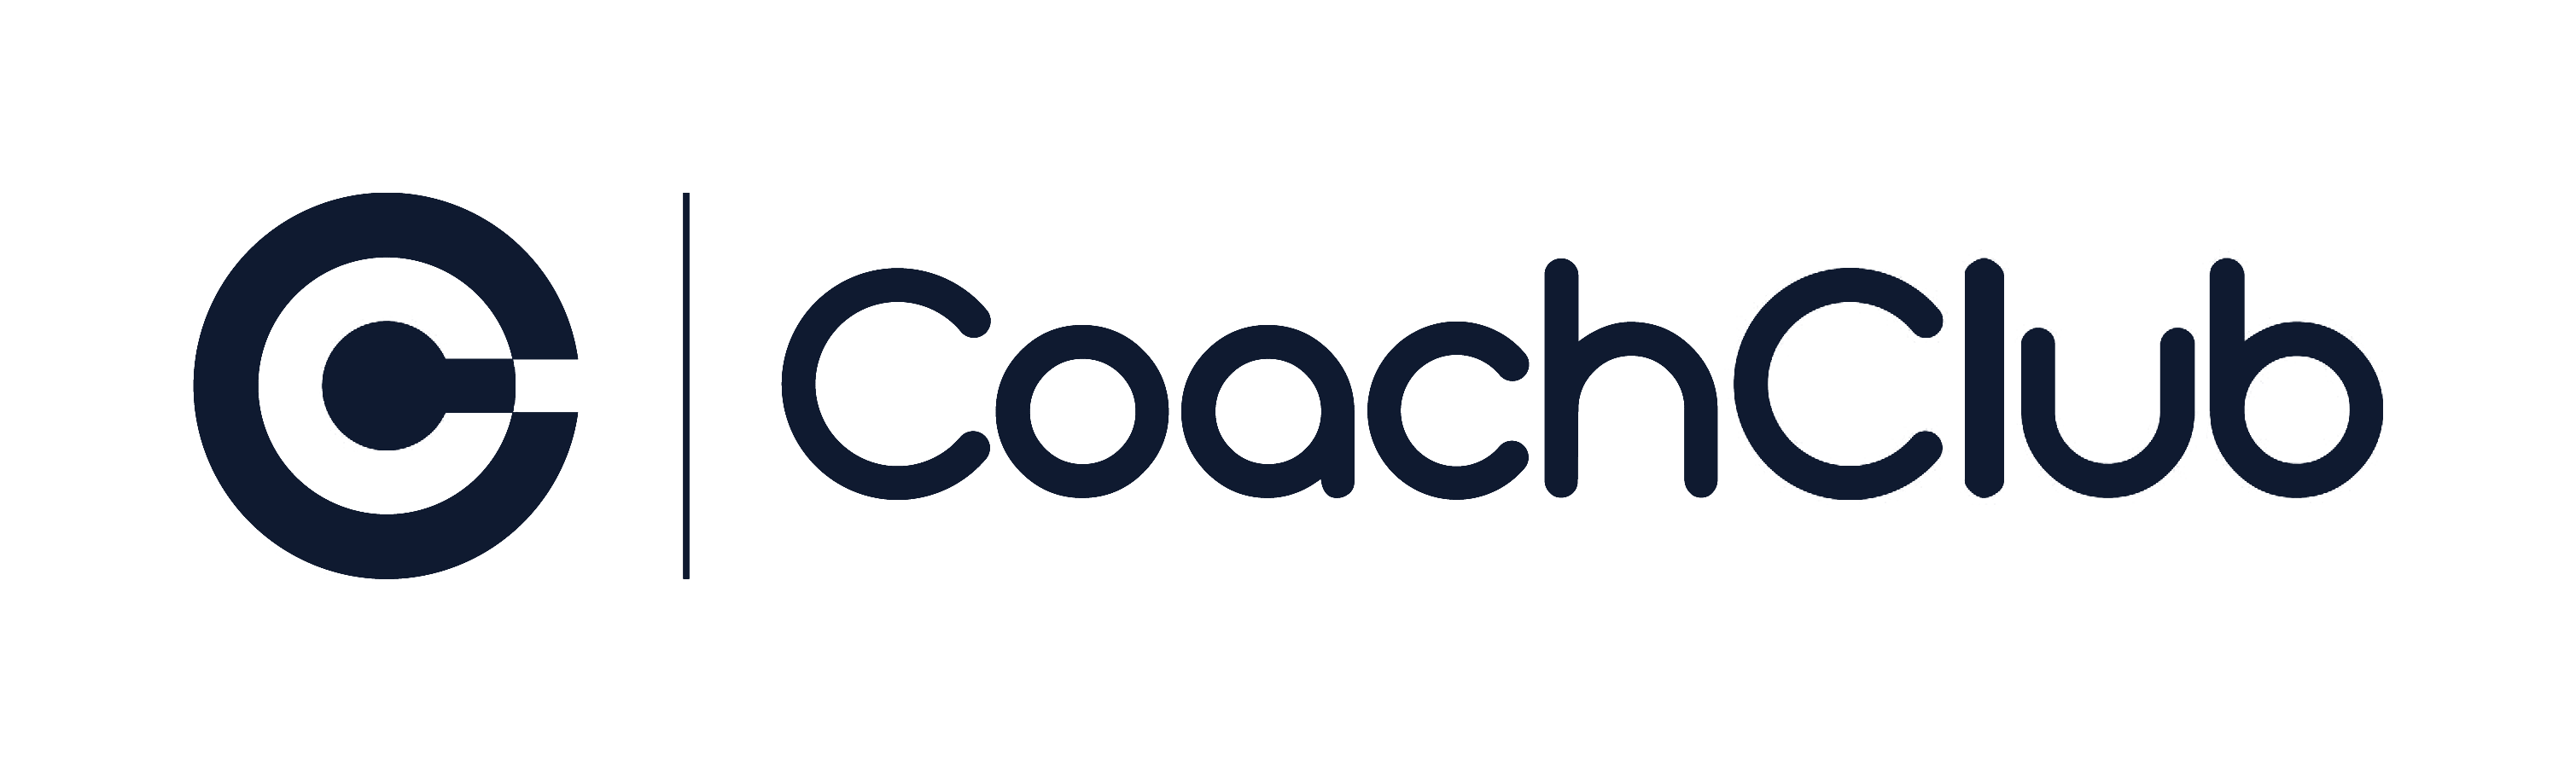 Coachclub logo